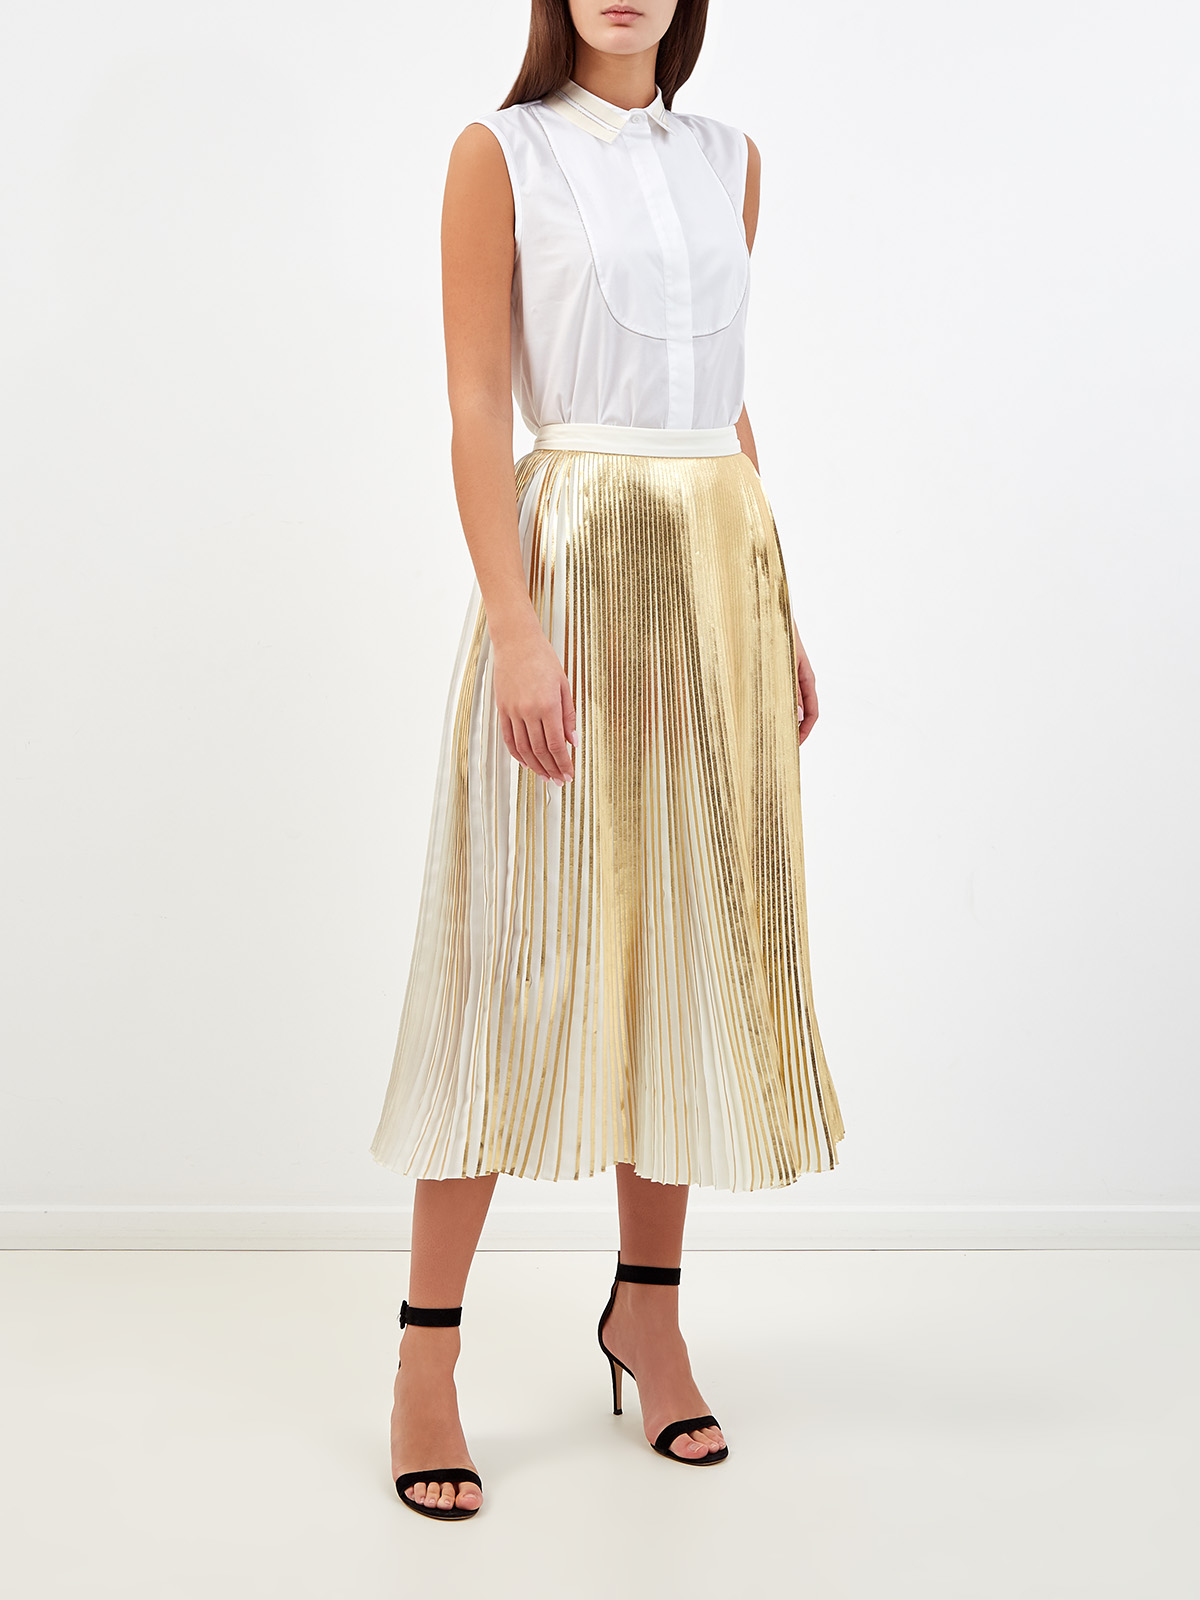 Плиссированная юбка-миди с металлизированным напылением VALENTINO, цвет золотистый, размер 40;42;44;38 - фото 2